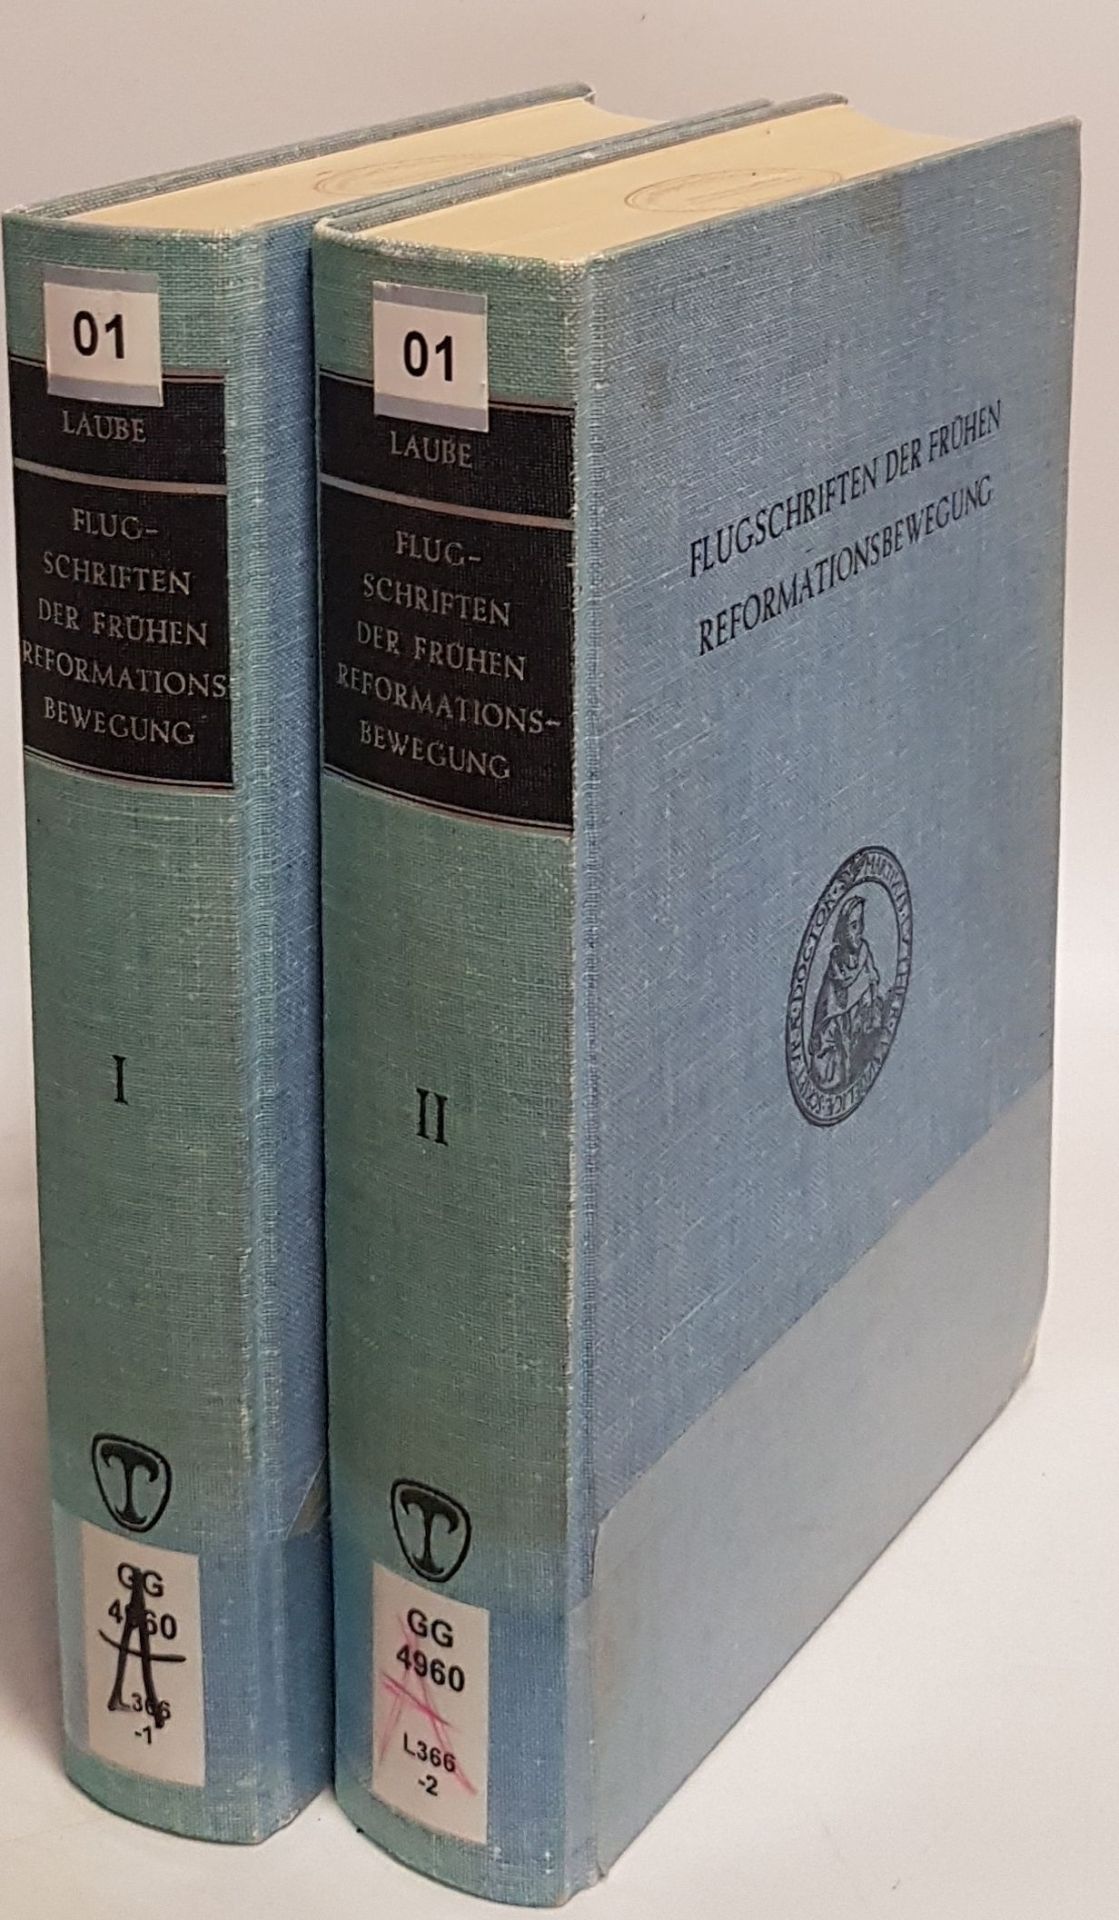 Flugschriften der frühen Reformationsbewegung (1518-1524) (2 Bände KOMPLETT) - Laube, Adolf, Annerose Schneider und Sigrid Looß